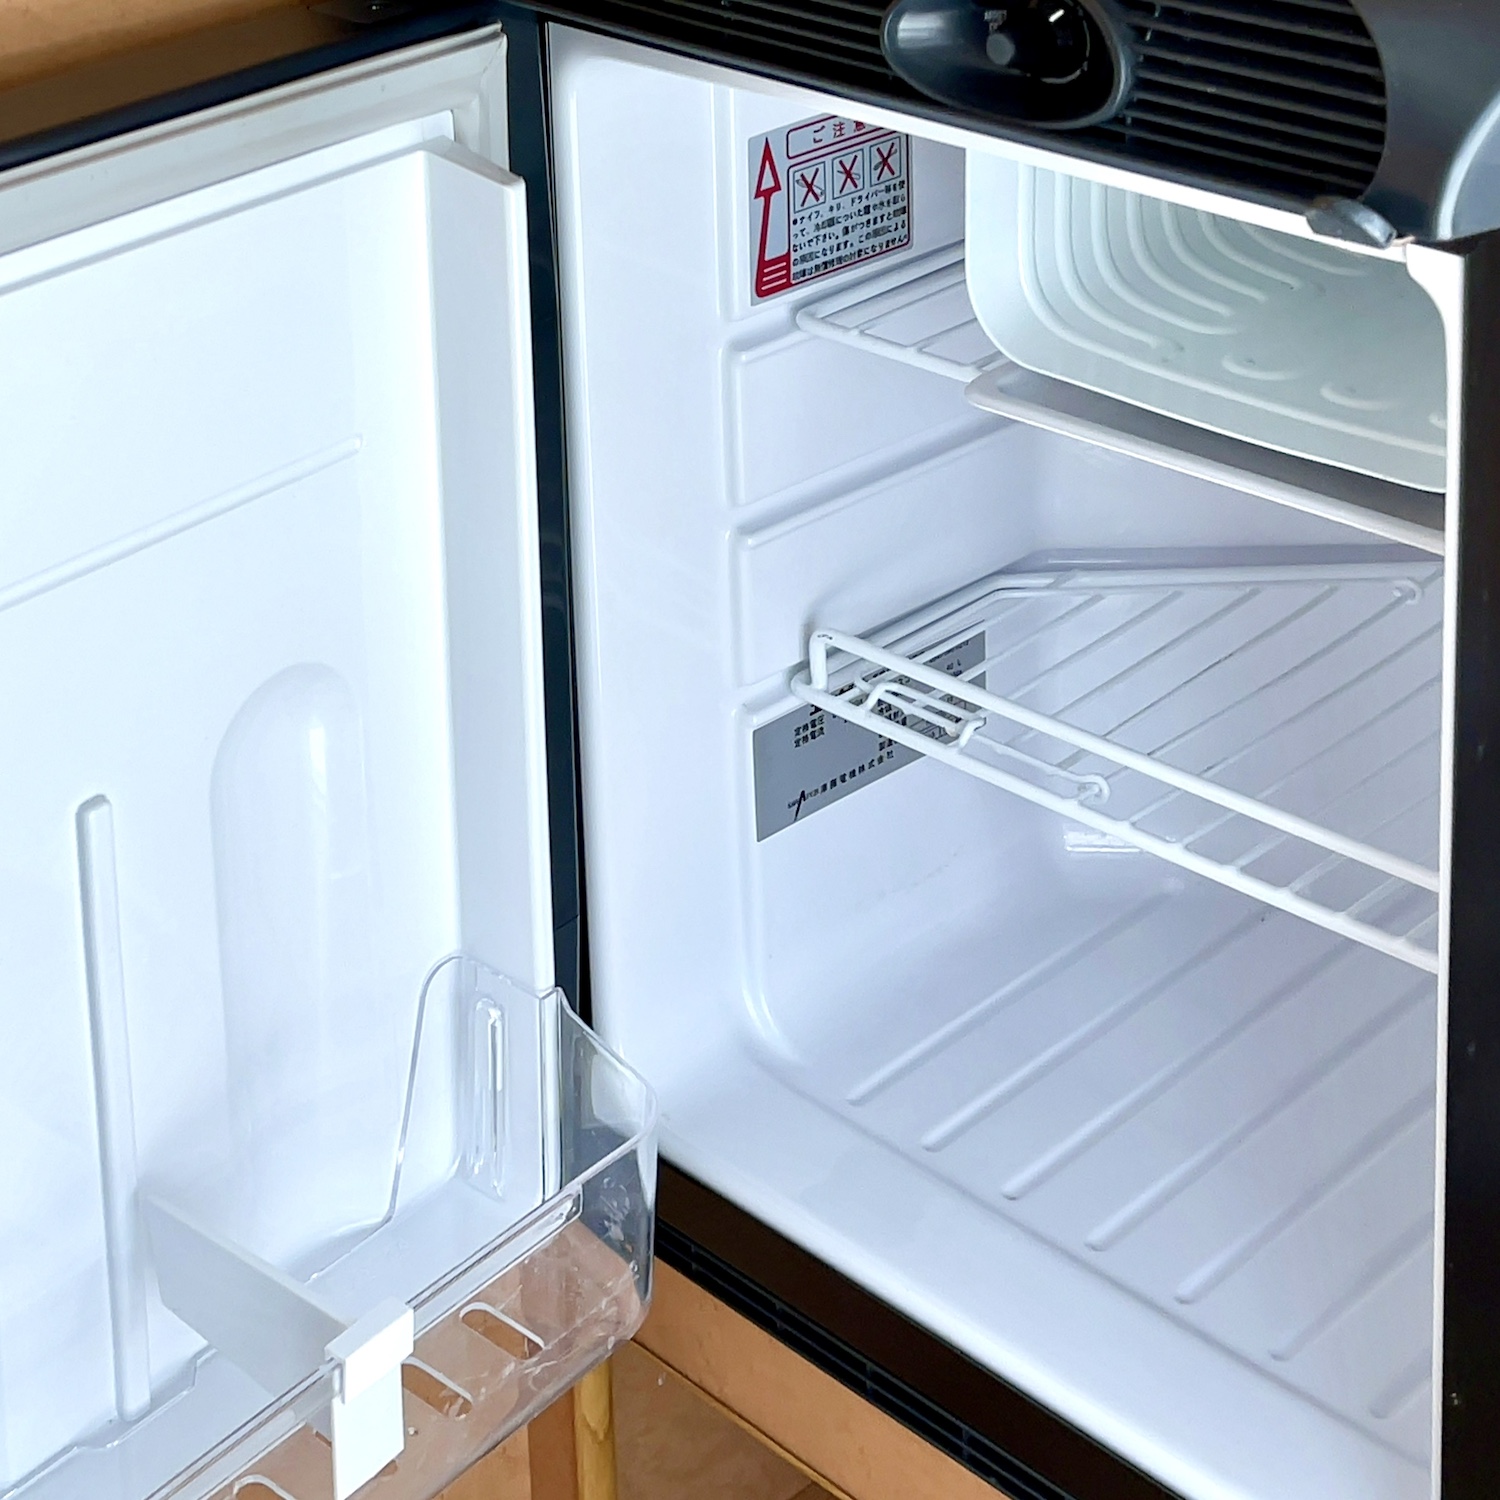 キャンピングカーに冷蔵庫は必要 定番品 ｅｎｇｅｌ冷蔵庫 で検証 キャンピングカー 車中泊 Be Pal キャンプ アウトドア 自然派生活の情報源ビーパル